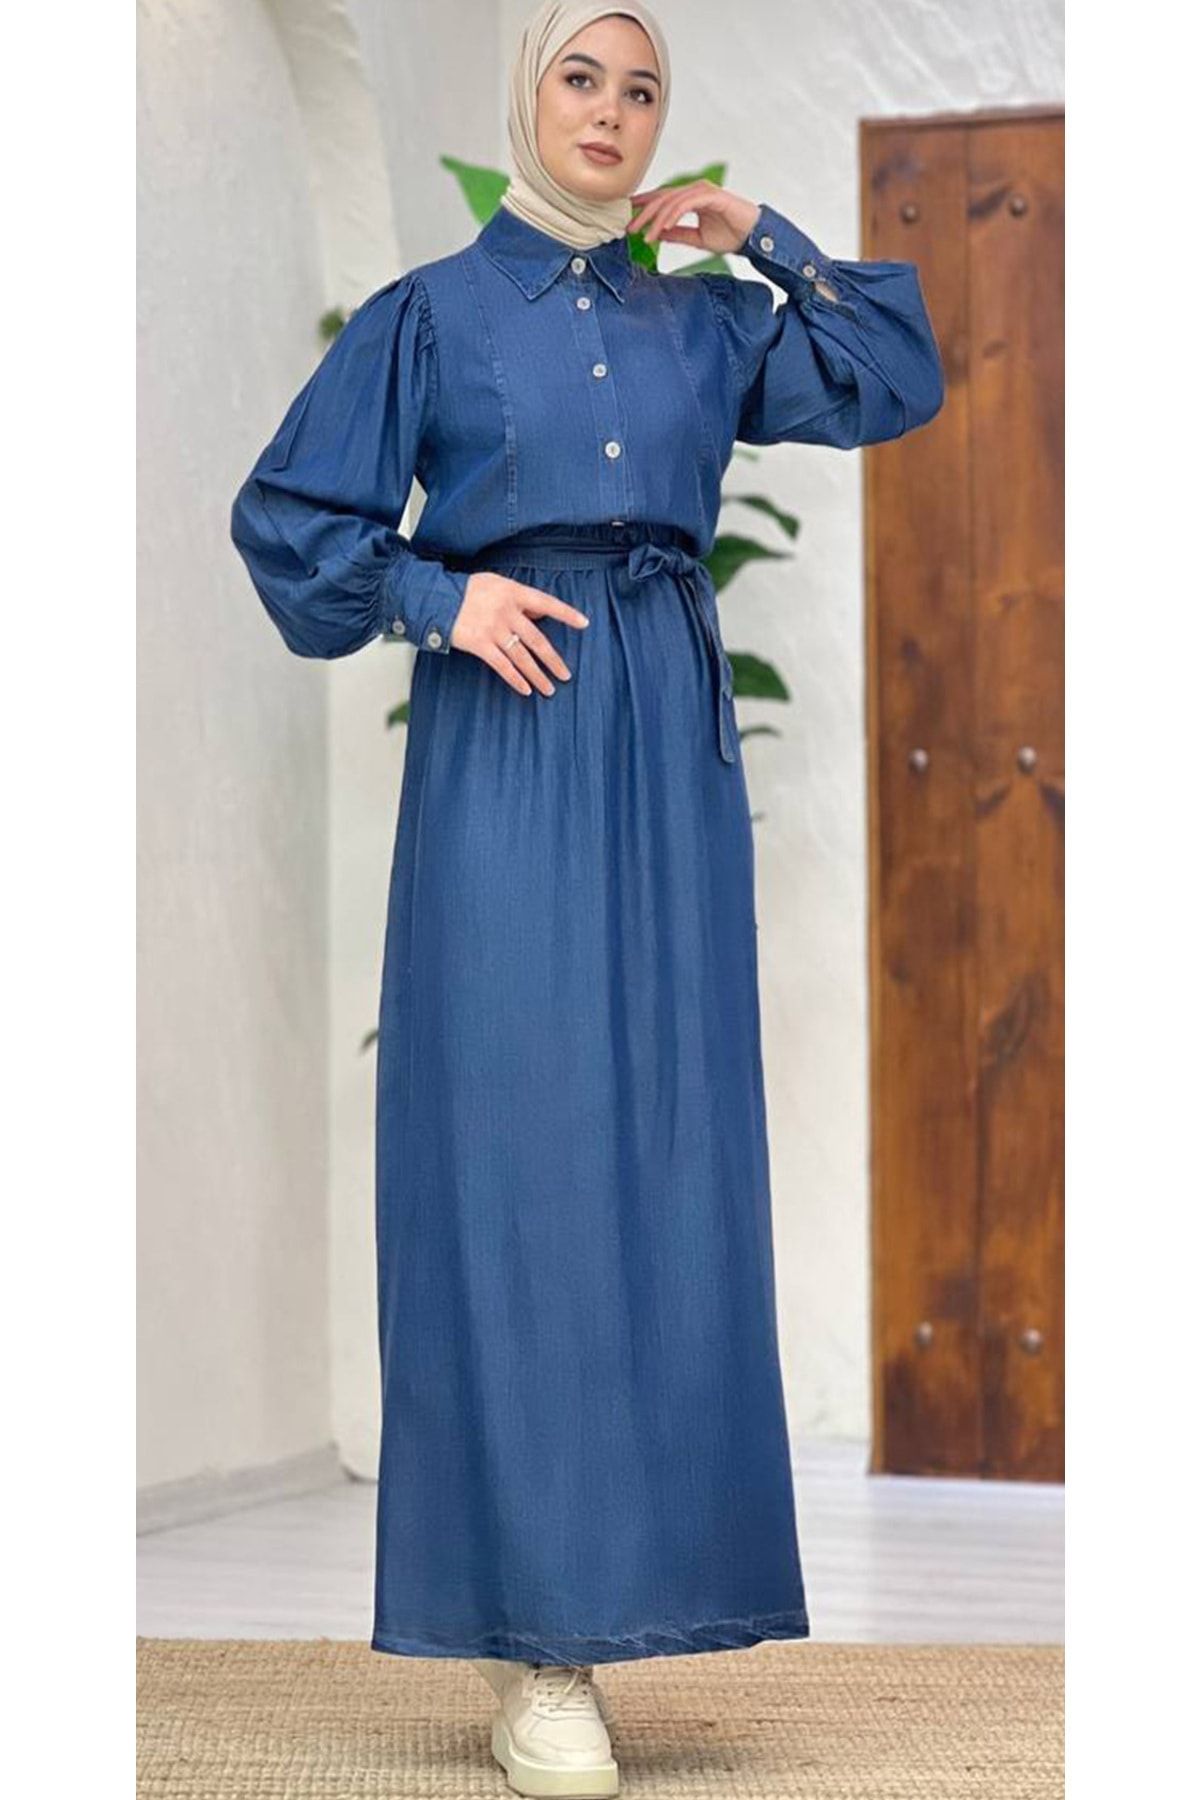 XVOGO Uzun Şık Mavi Kot Modest Gömlek Yaka Doğal Kuşaklı Düğmeli Uzun Kollu Jean Elbise Büyük Beden Tesett